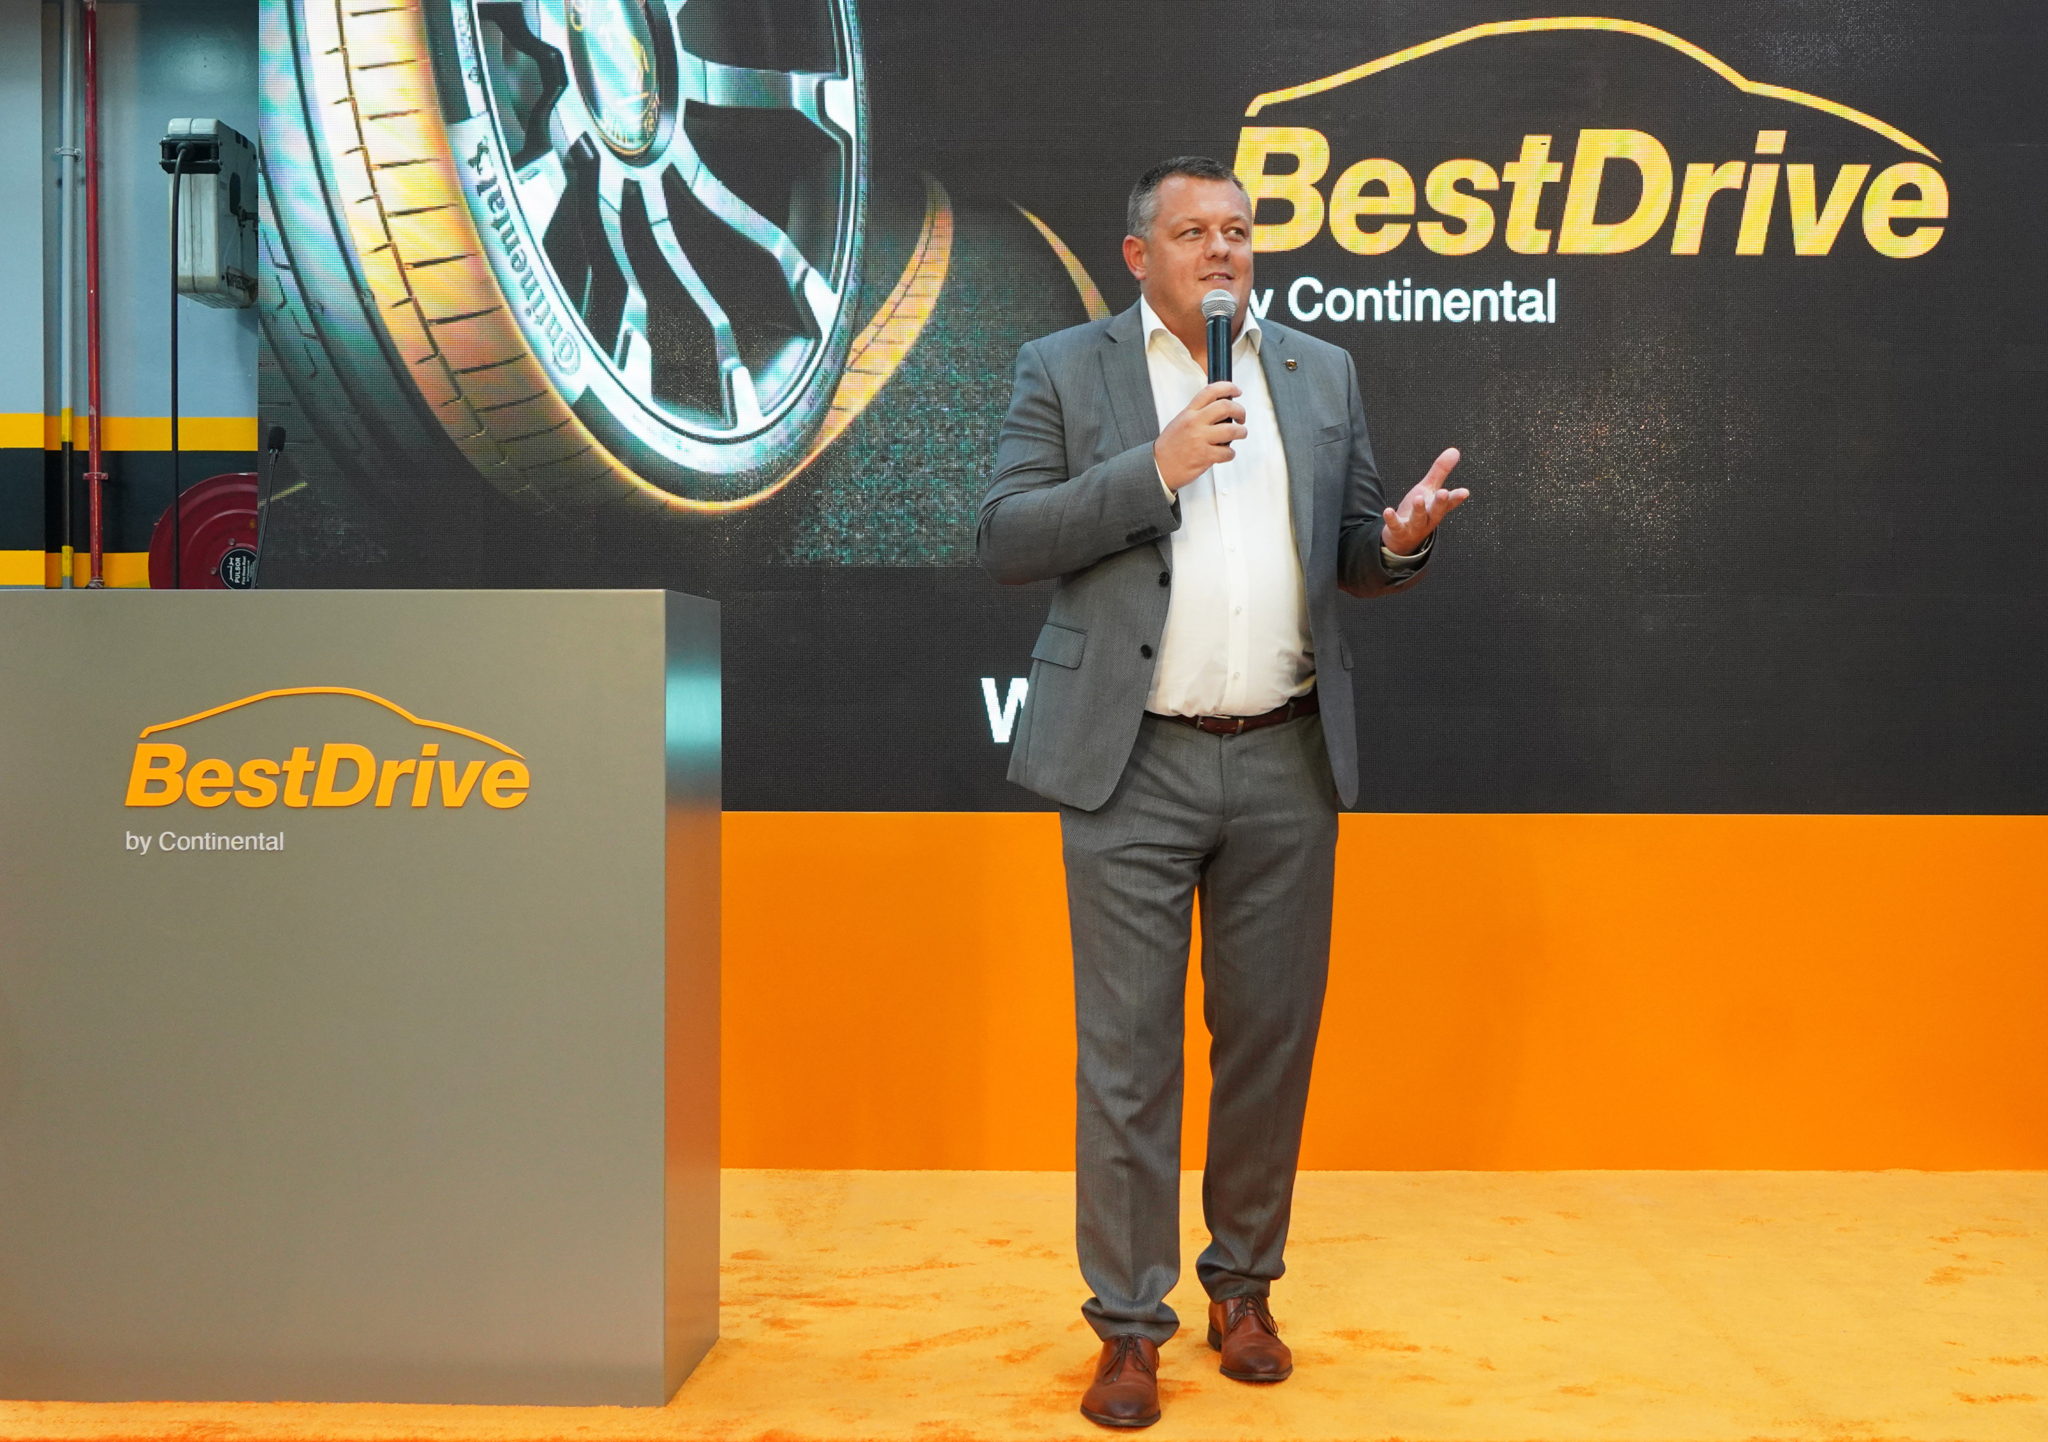 Continental’s BestDrive tyre retailer opens first Dubai branch